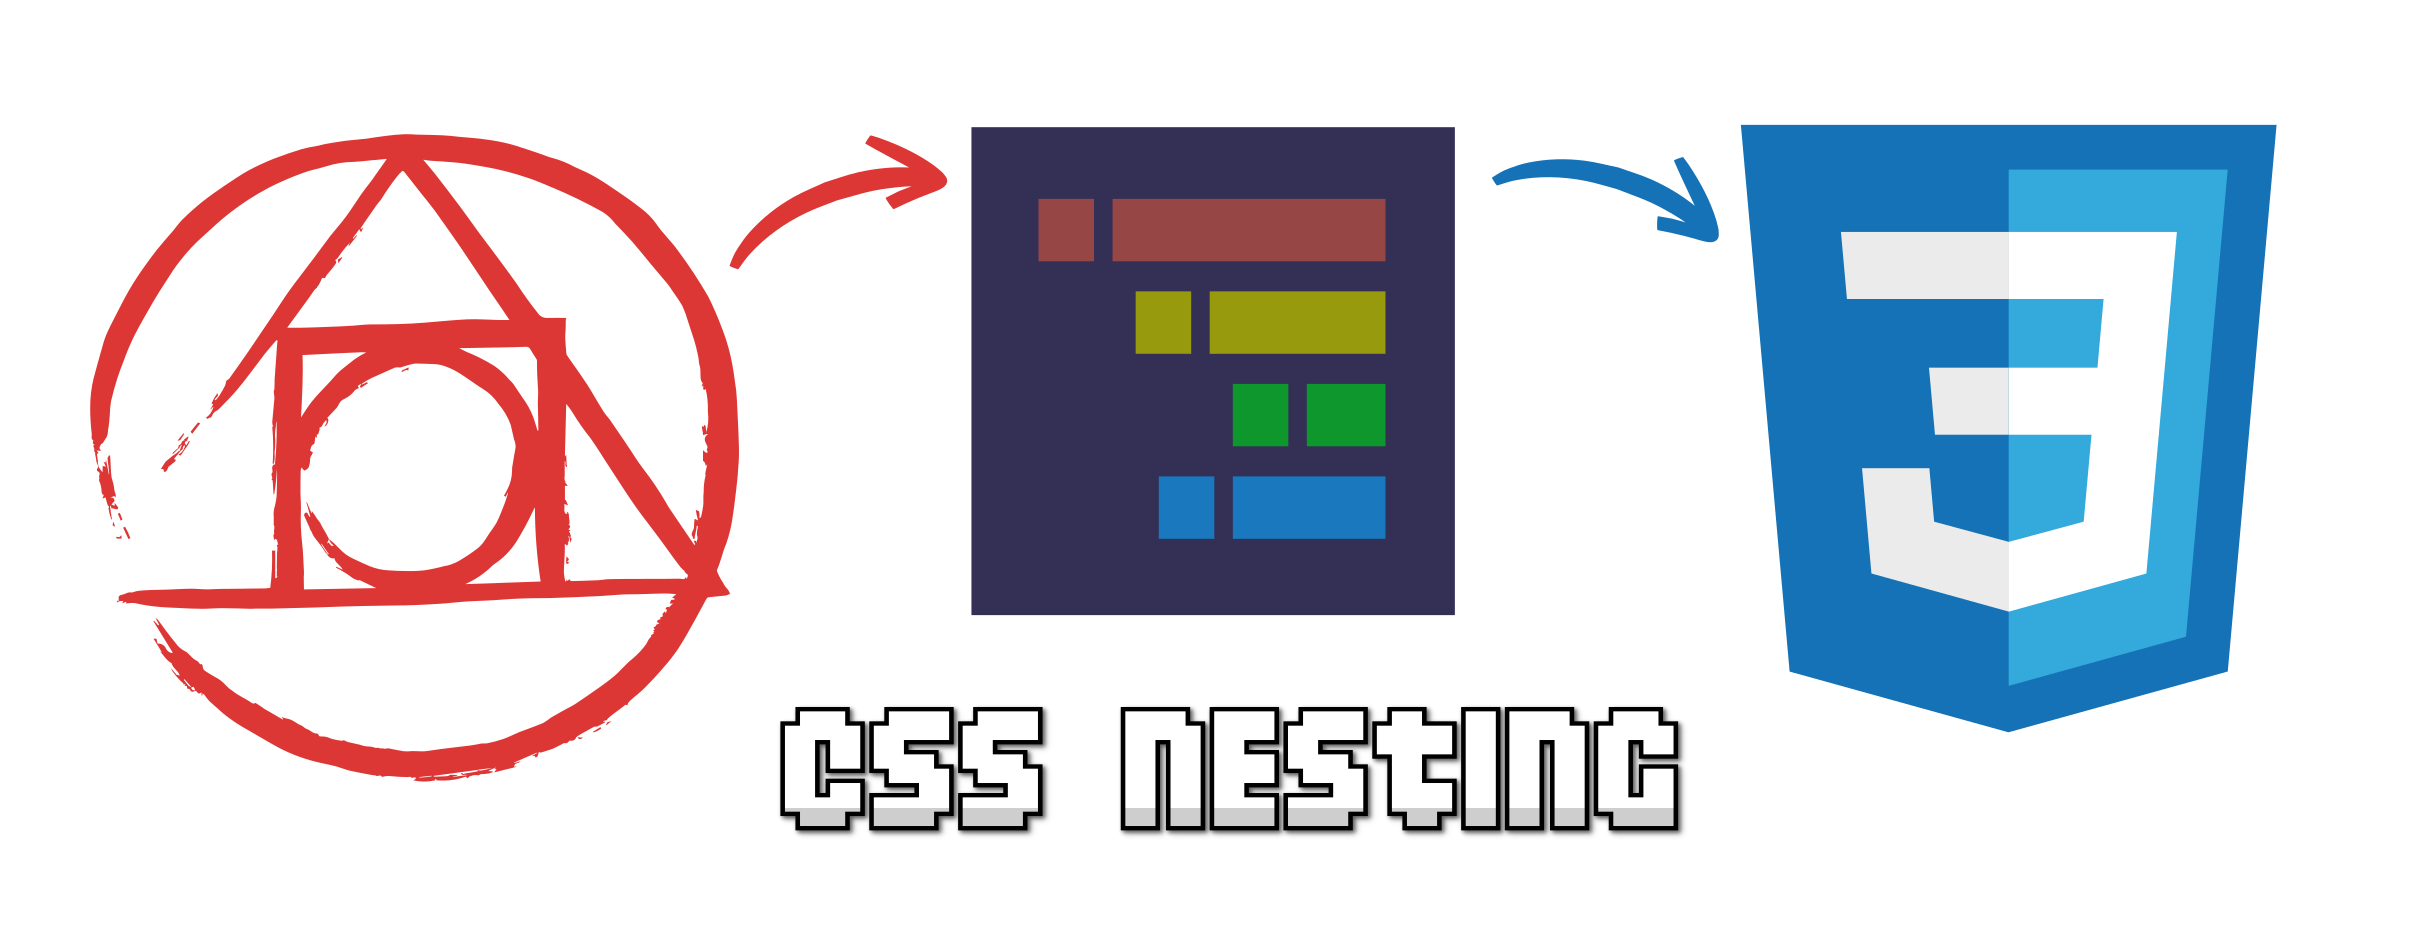 CSS Nesting